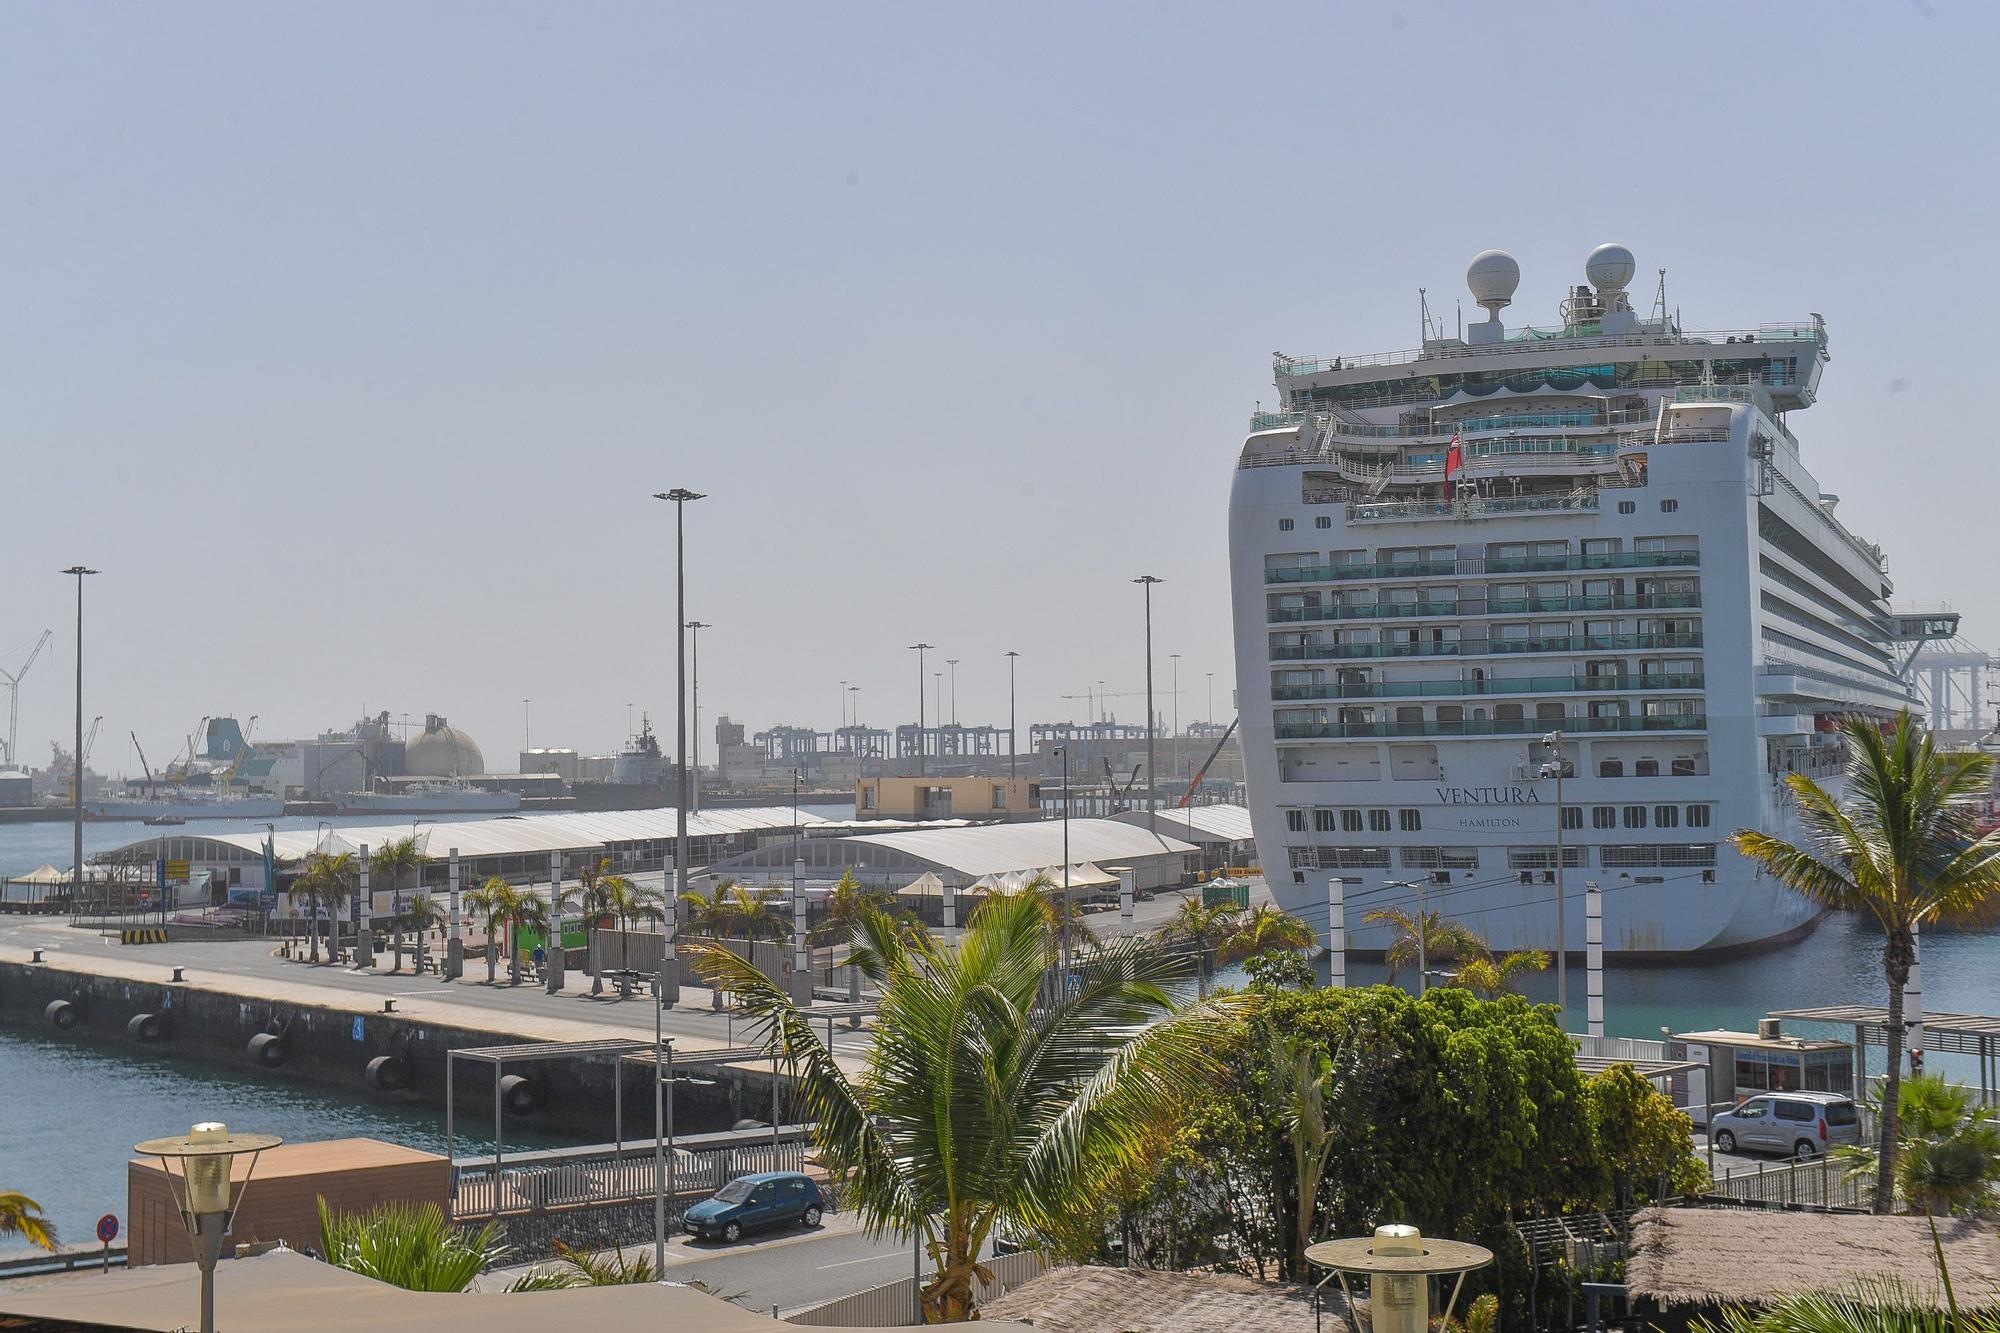 Crucero 'Ventura' en el Puerto de Las Palmas